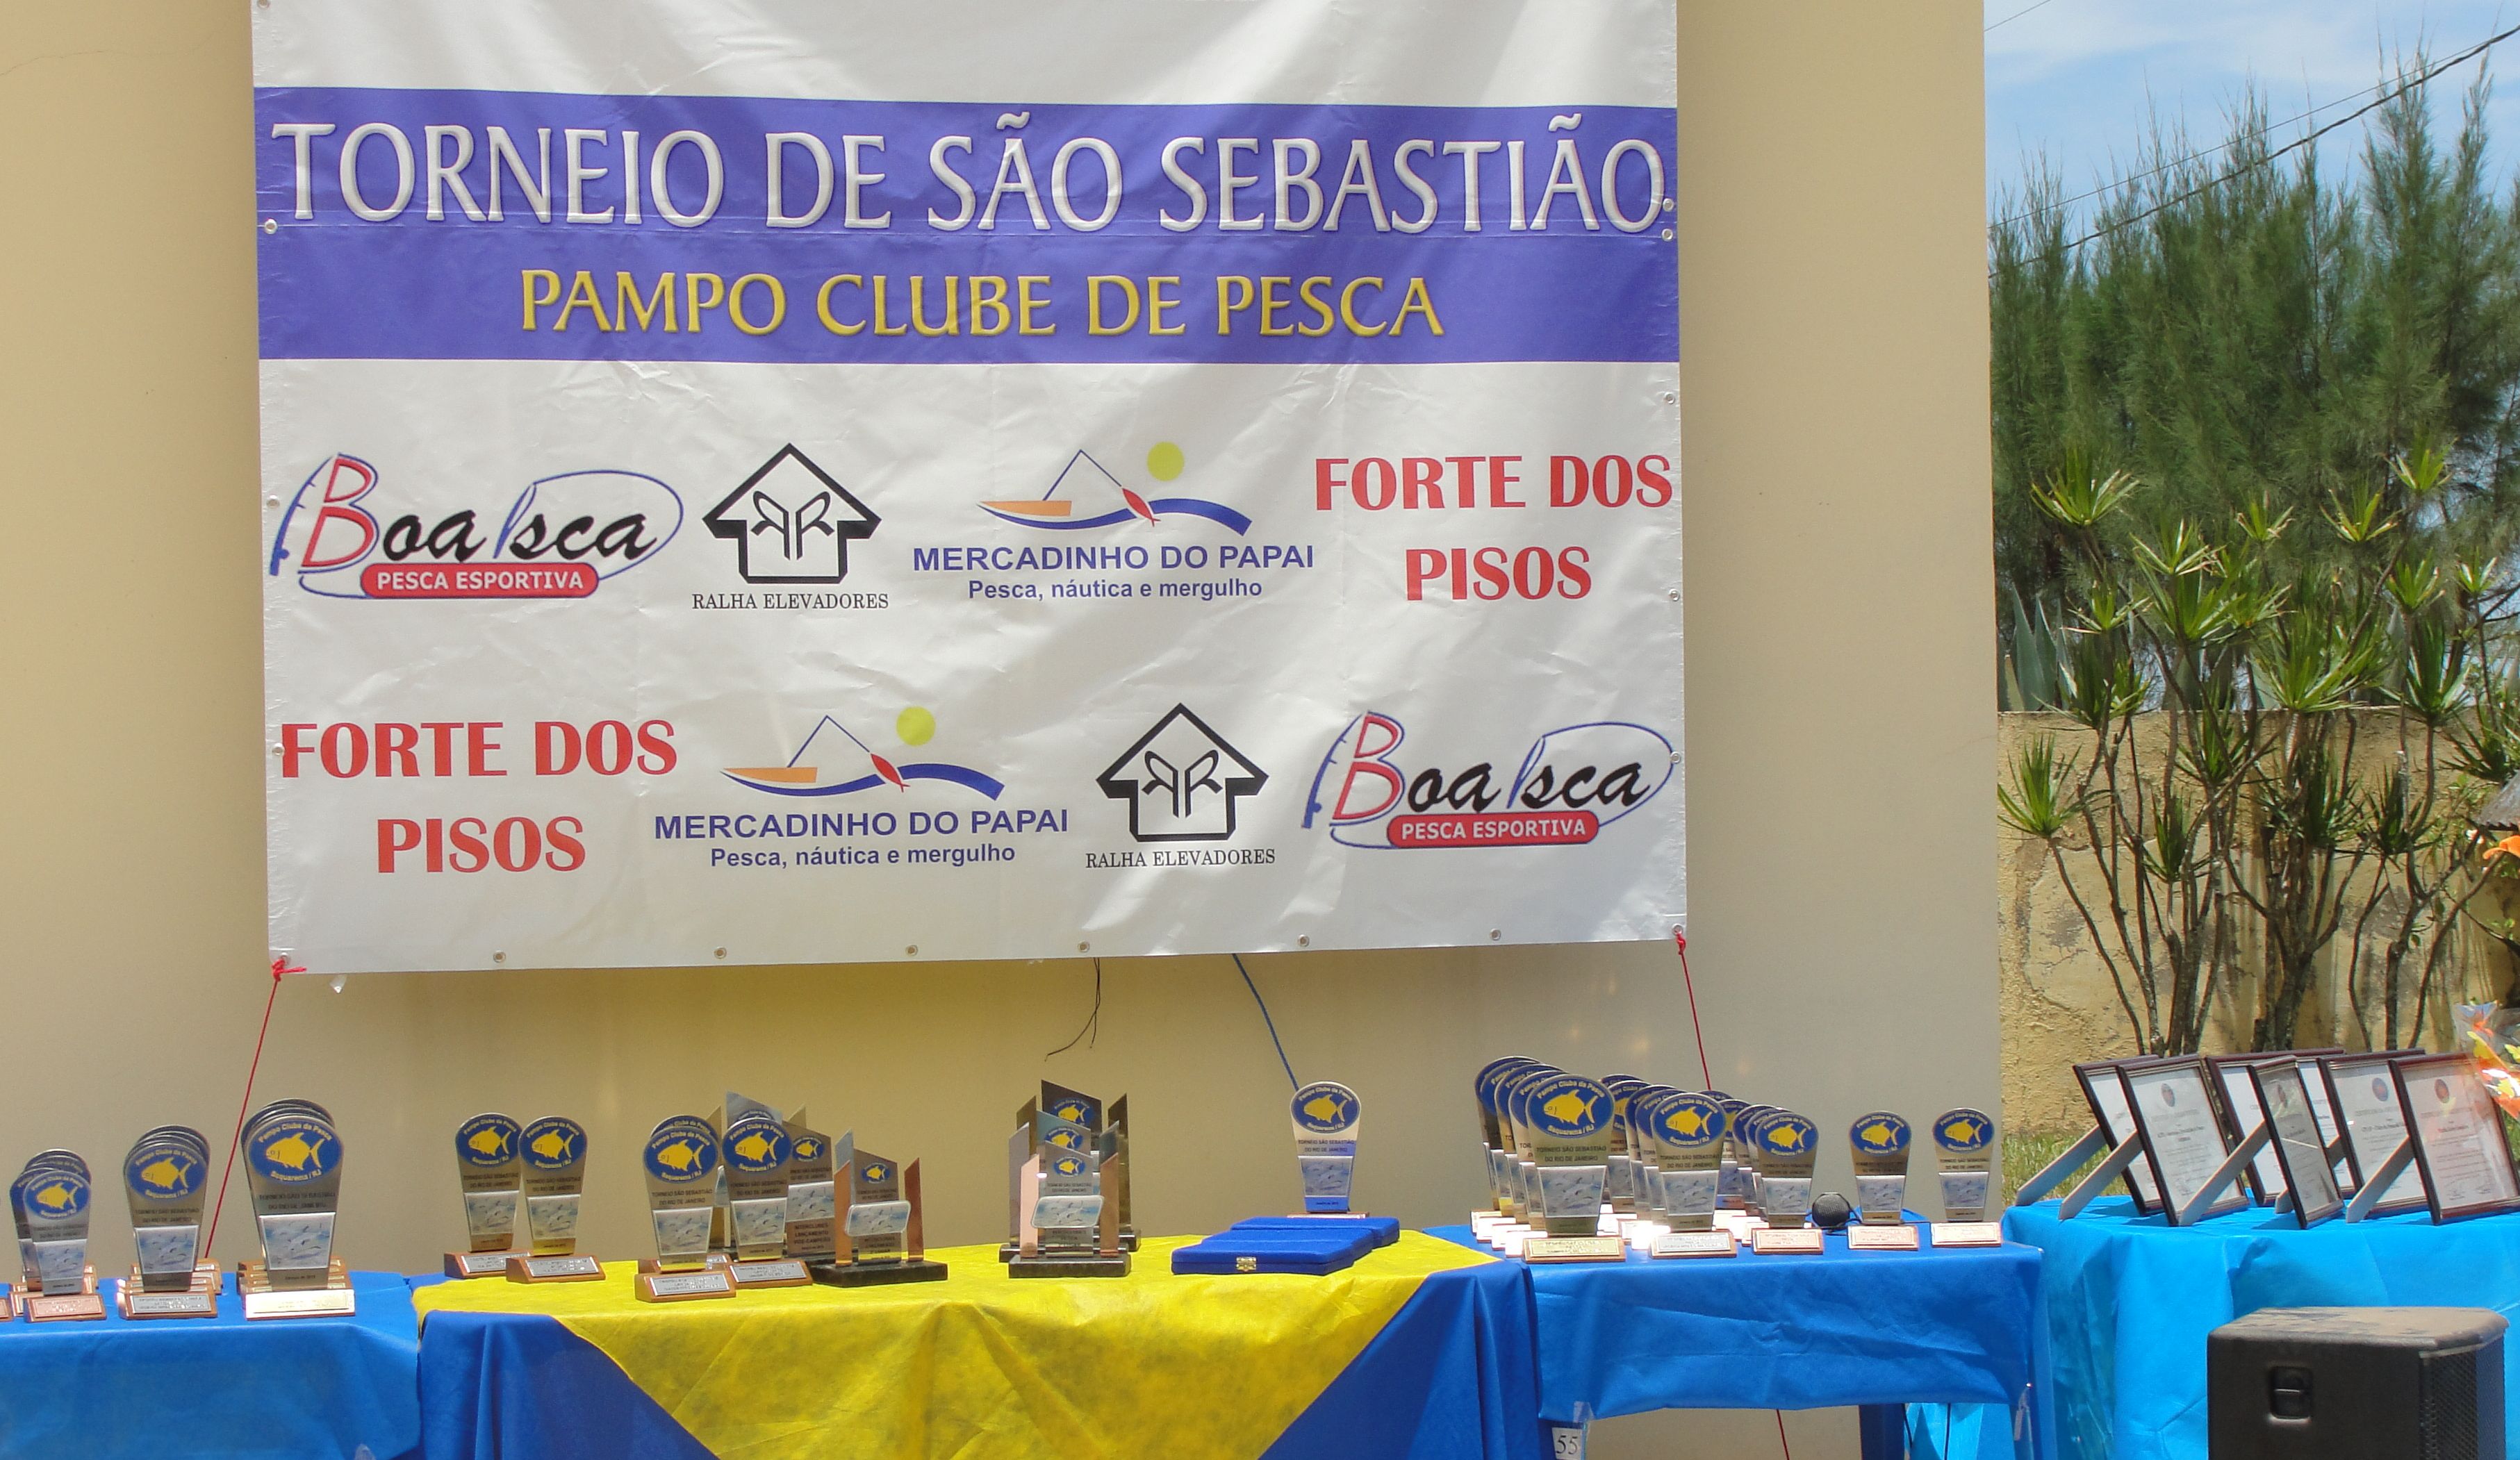 Torneio de São Sebastião 2010 – Depoimentos